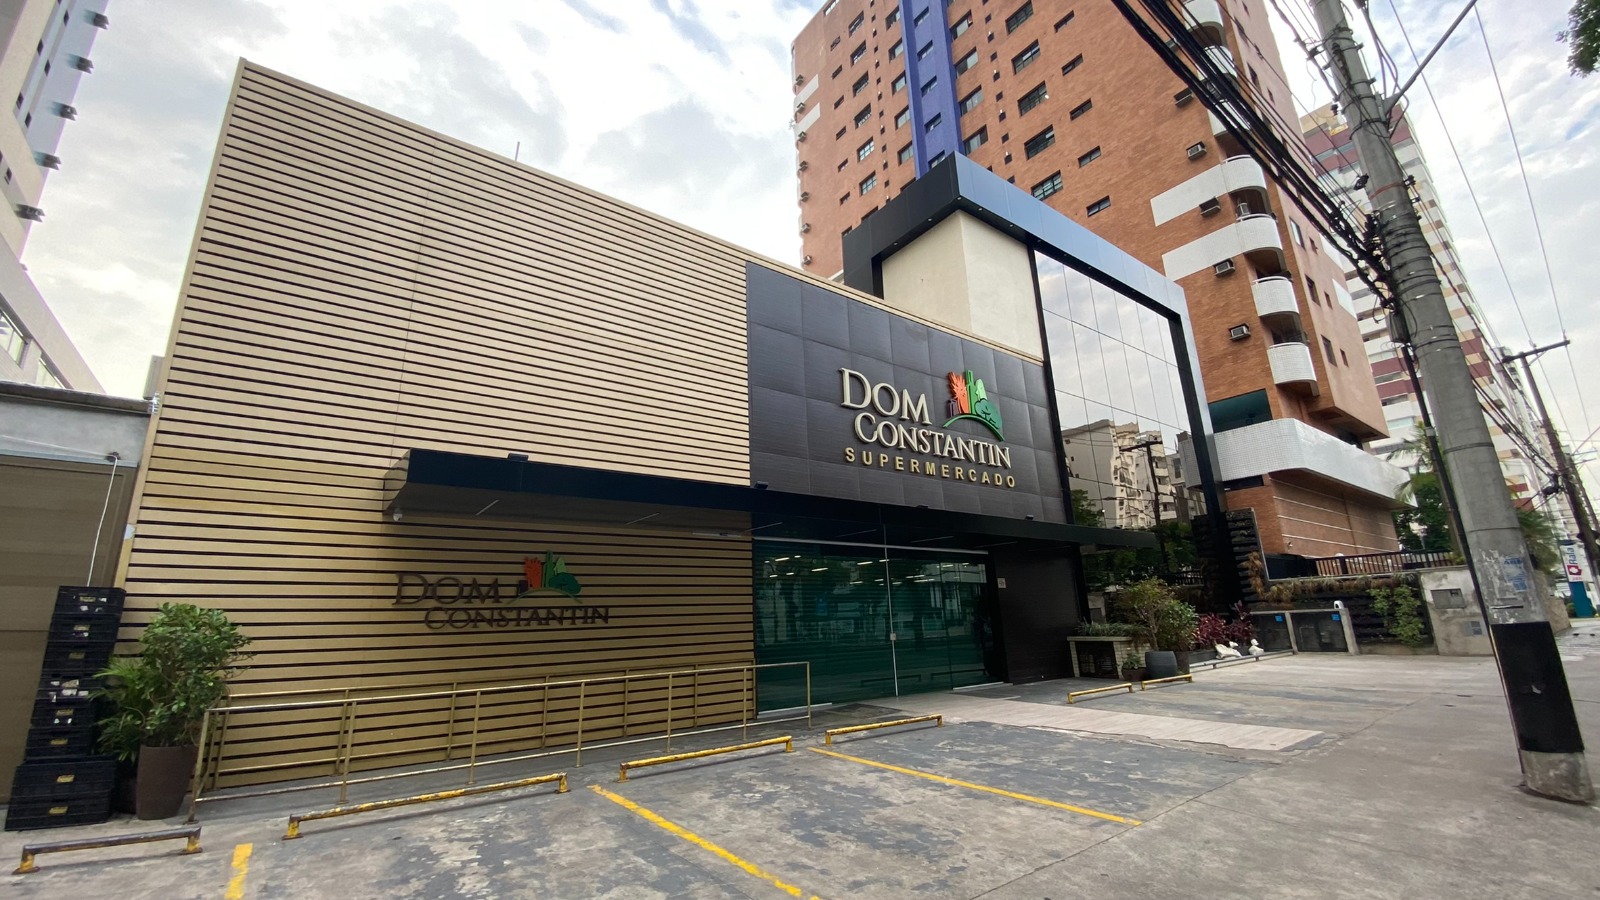 Dom Constantin Supermercado completa 7 anos  com ampliação de espaço e serviços | Jornal da Orla